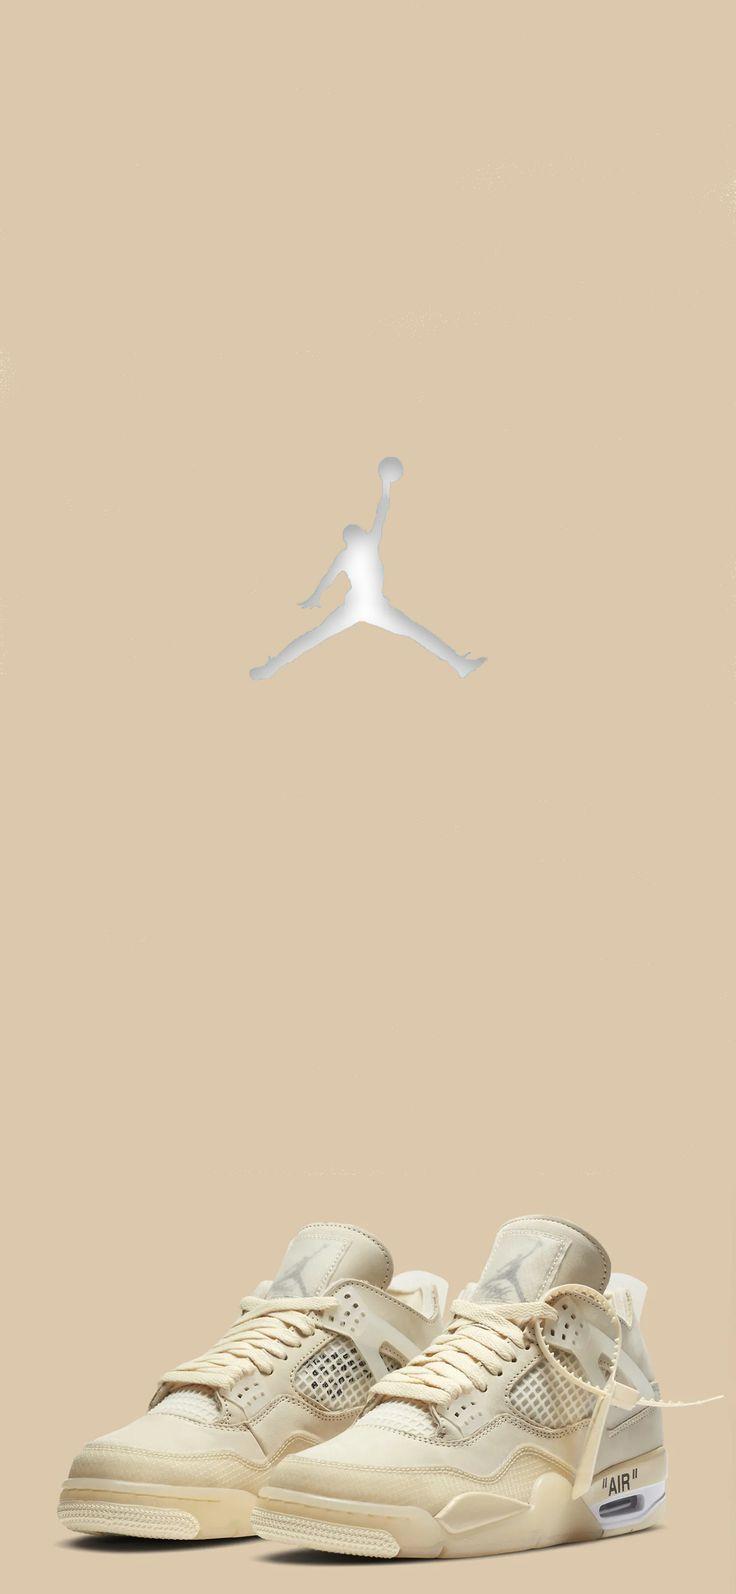 Air Jordan Off White Sneakers Wallpaper Nike